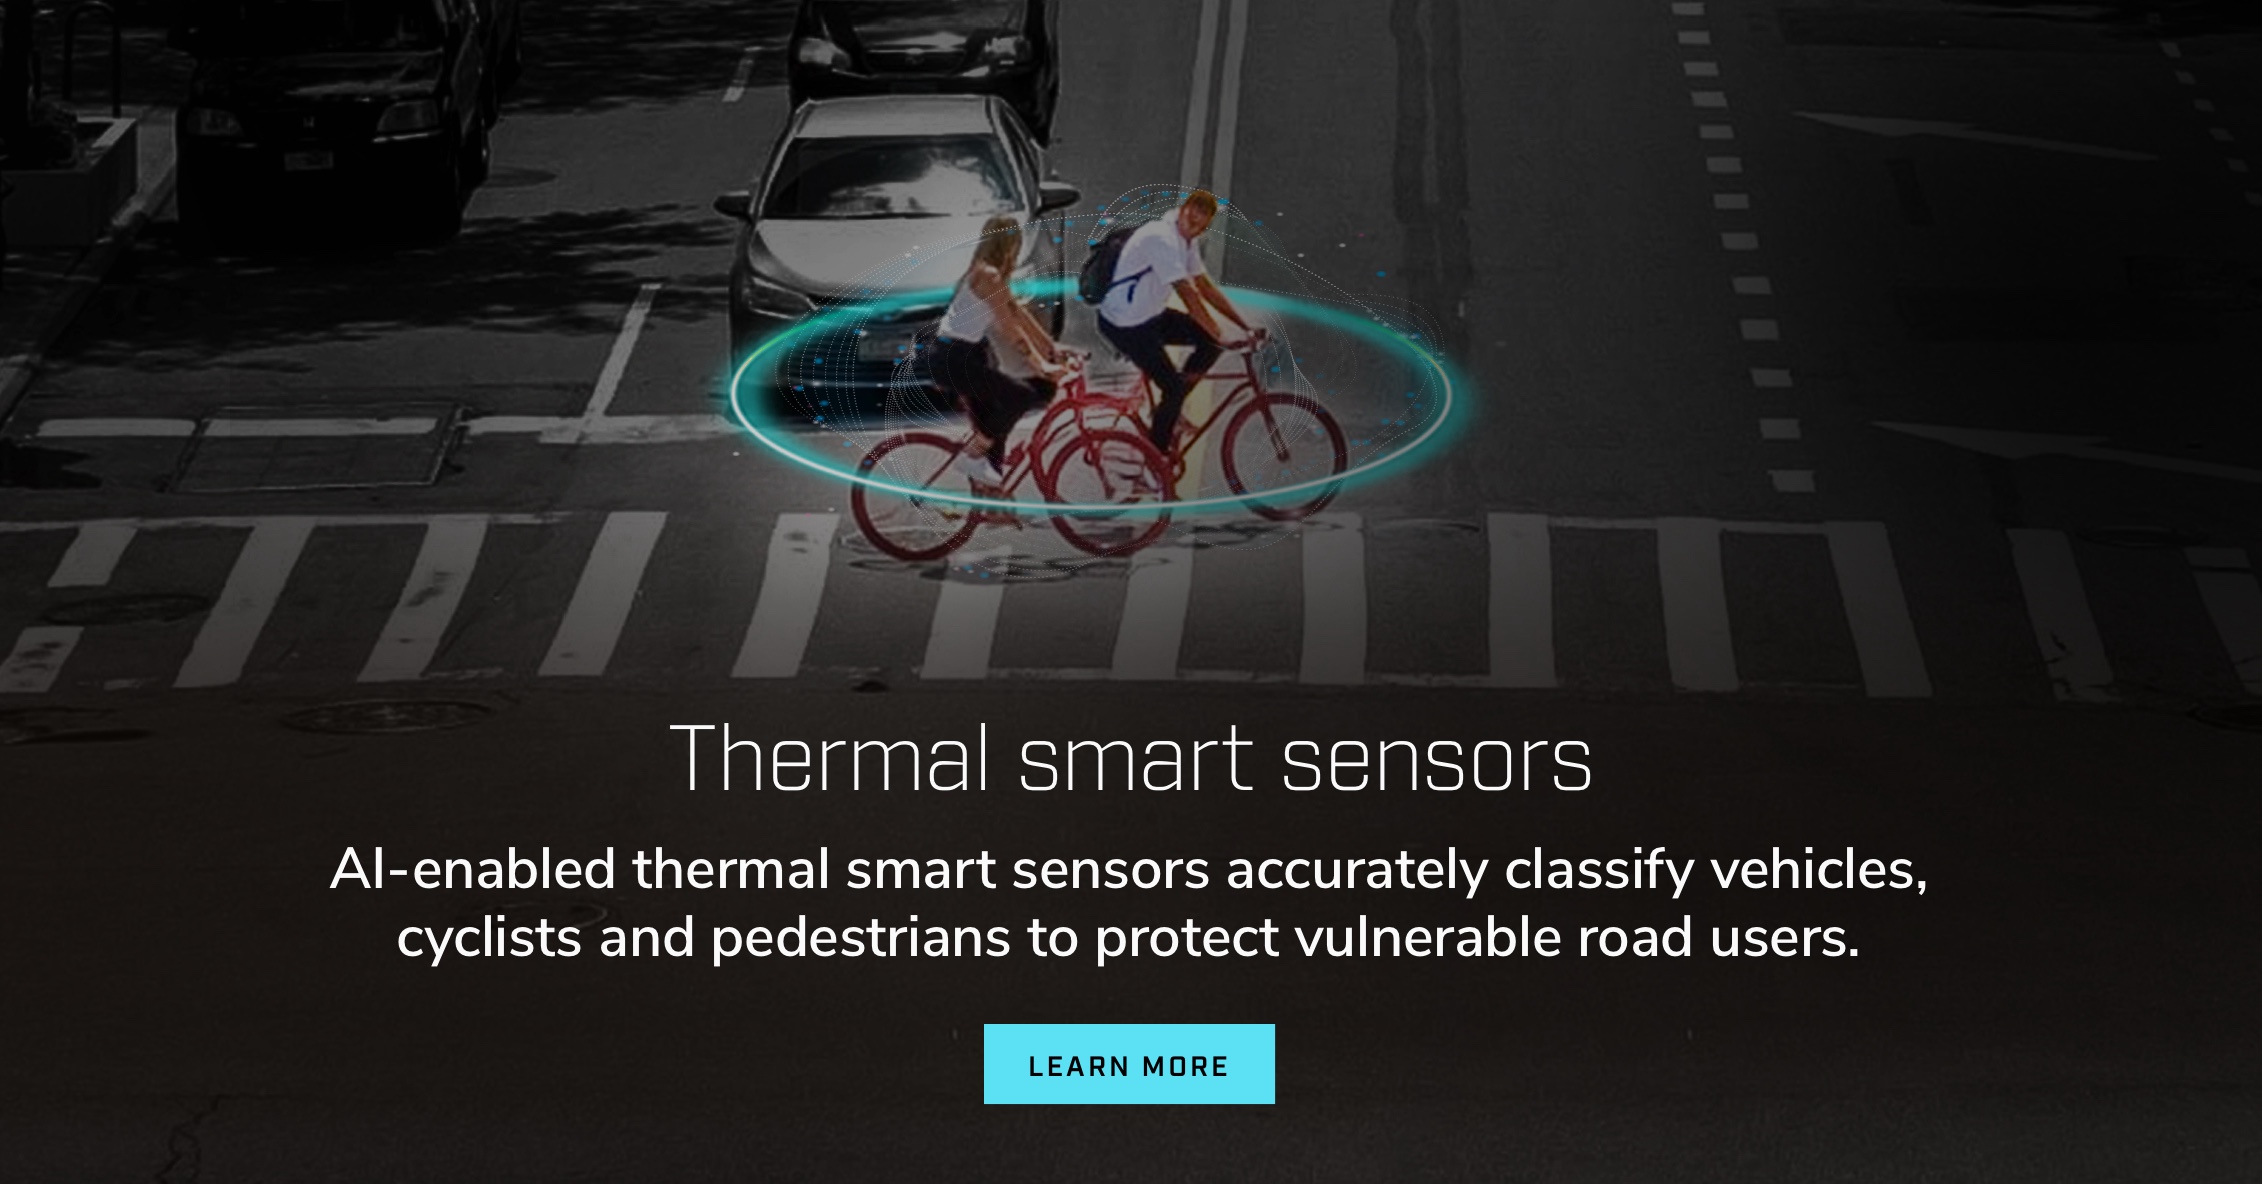 Capteurs thermiques intelligents. Les capteurs thermiques intelligents compatibles avec l’IA classent avec précision les véhicules, les cyclistes et les piétons pour protéger les usagers vulnérables de la route.